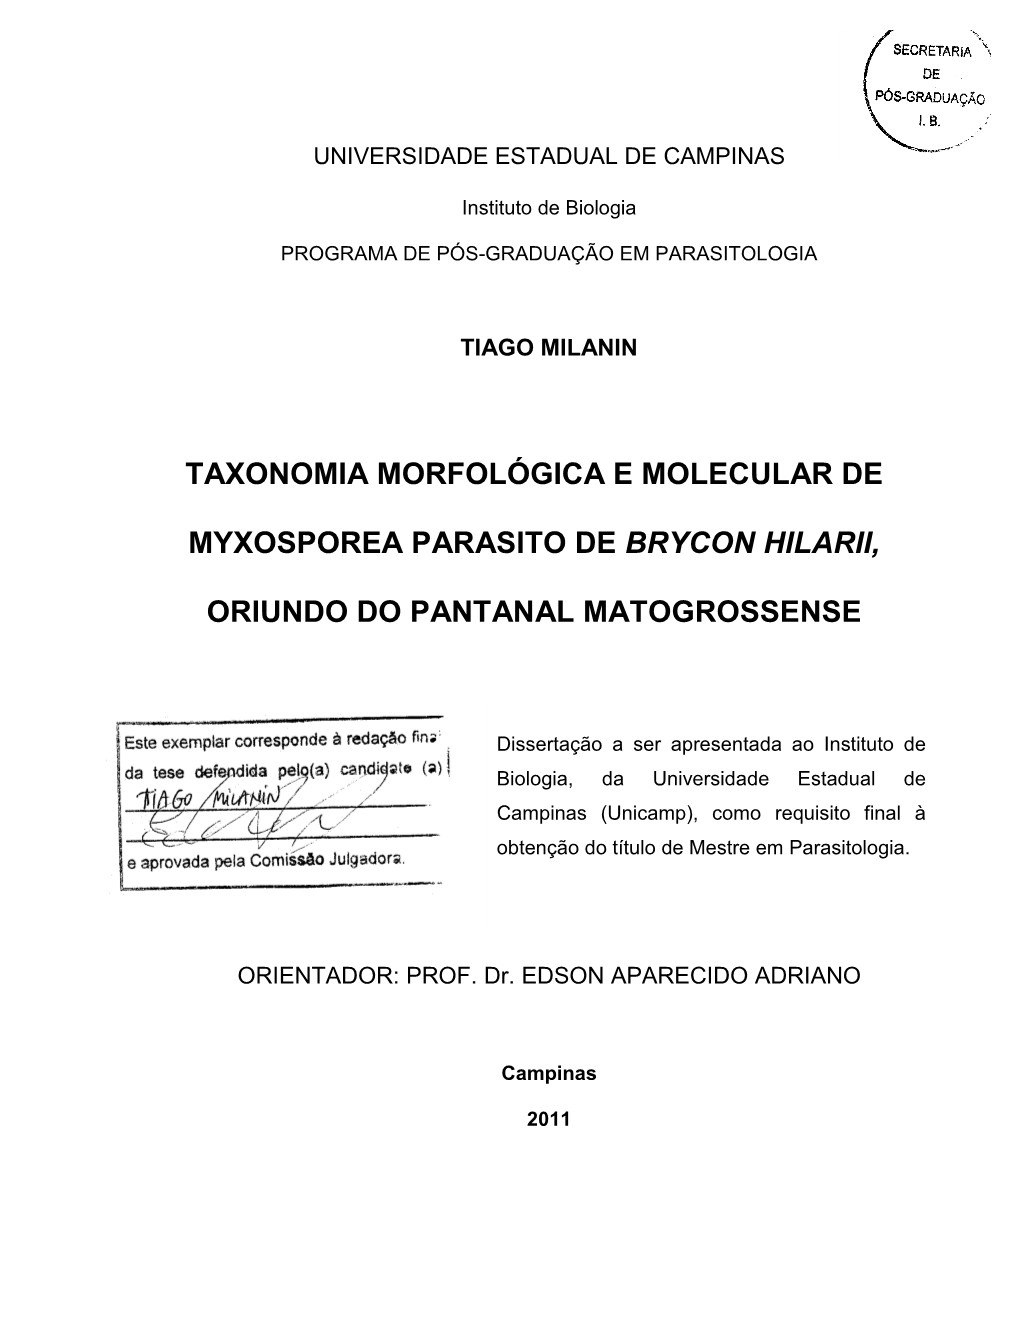 Taxonomia Morfológica E Molecular De Myxosporea Parasito De Brycon Hilarii, Oriundo Do Pantanal Matogrossense